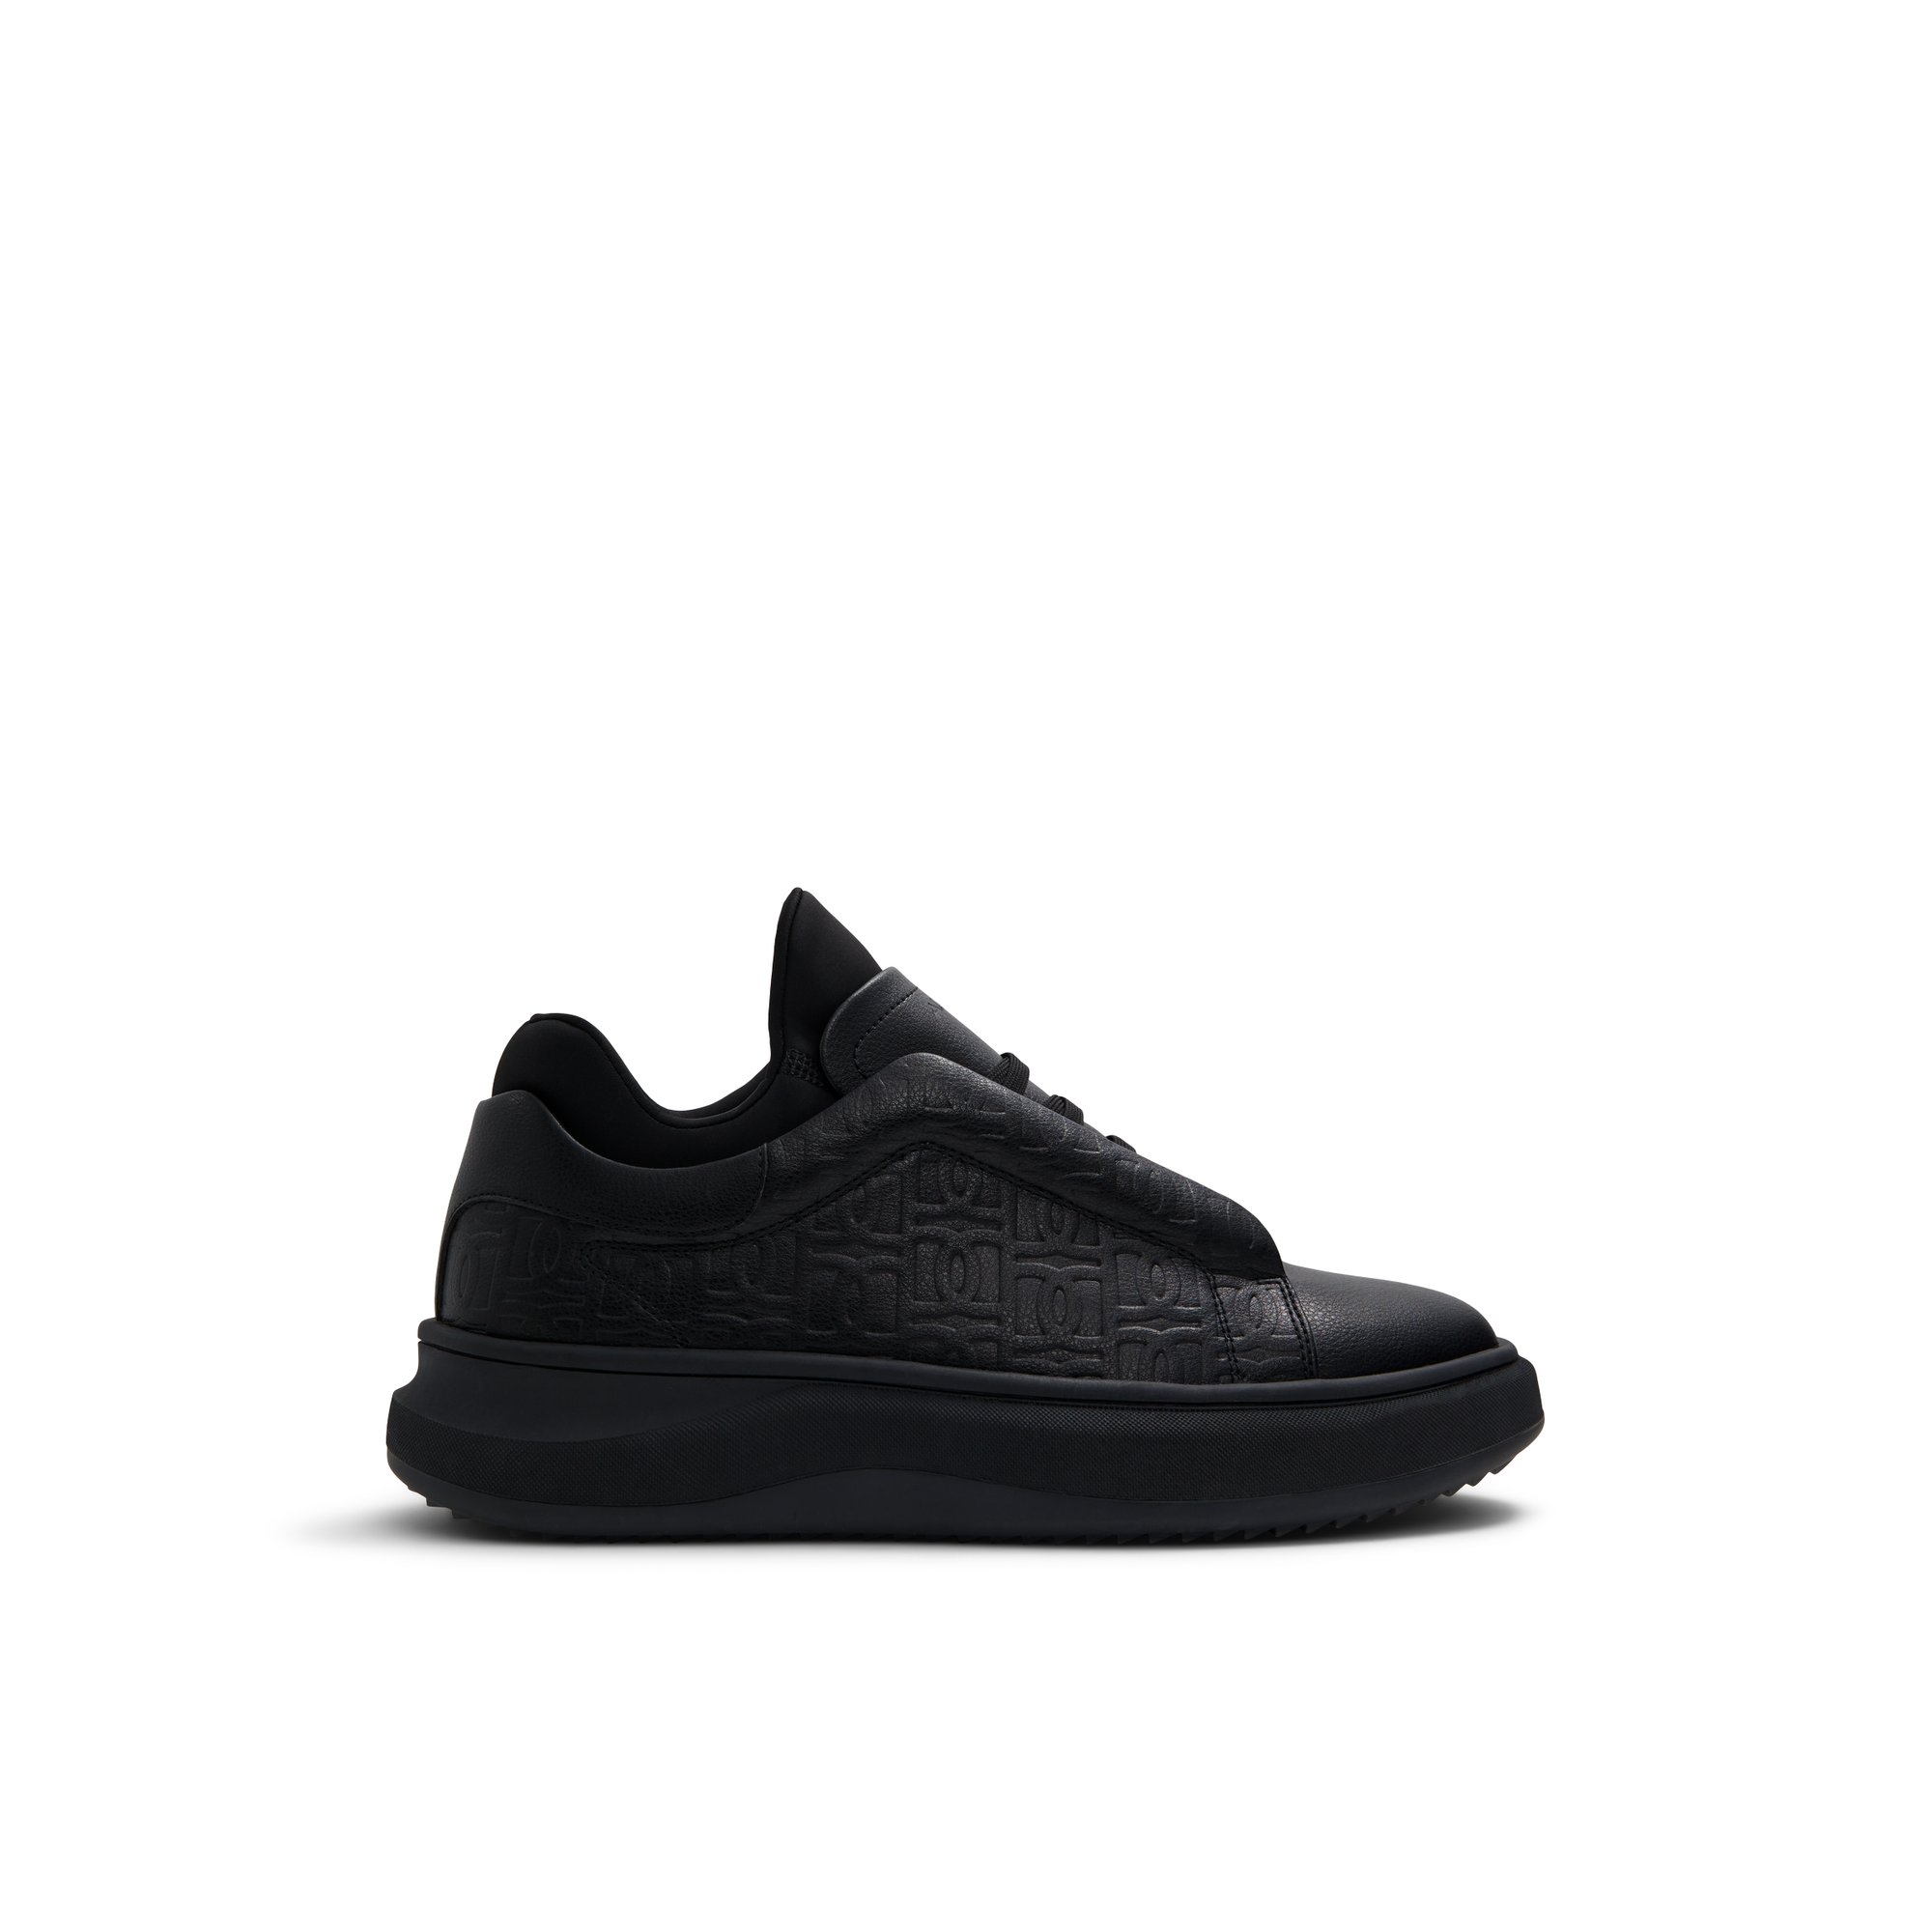 ALDO Midwavespec - Men's Low Top Sneakers - Black